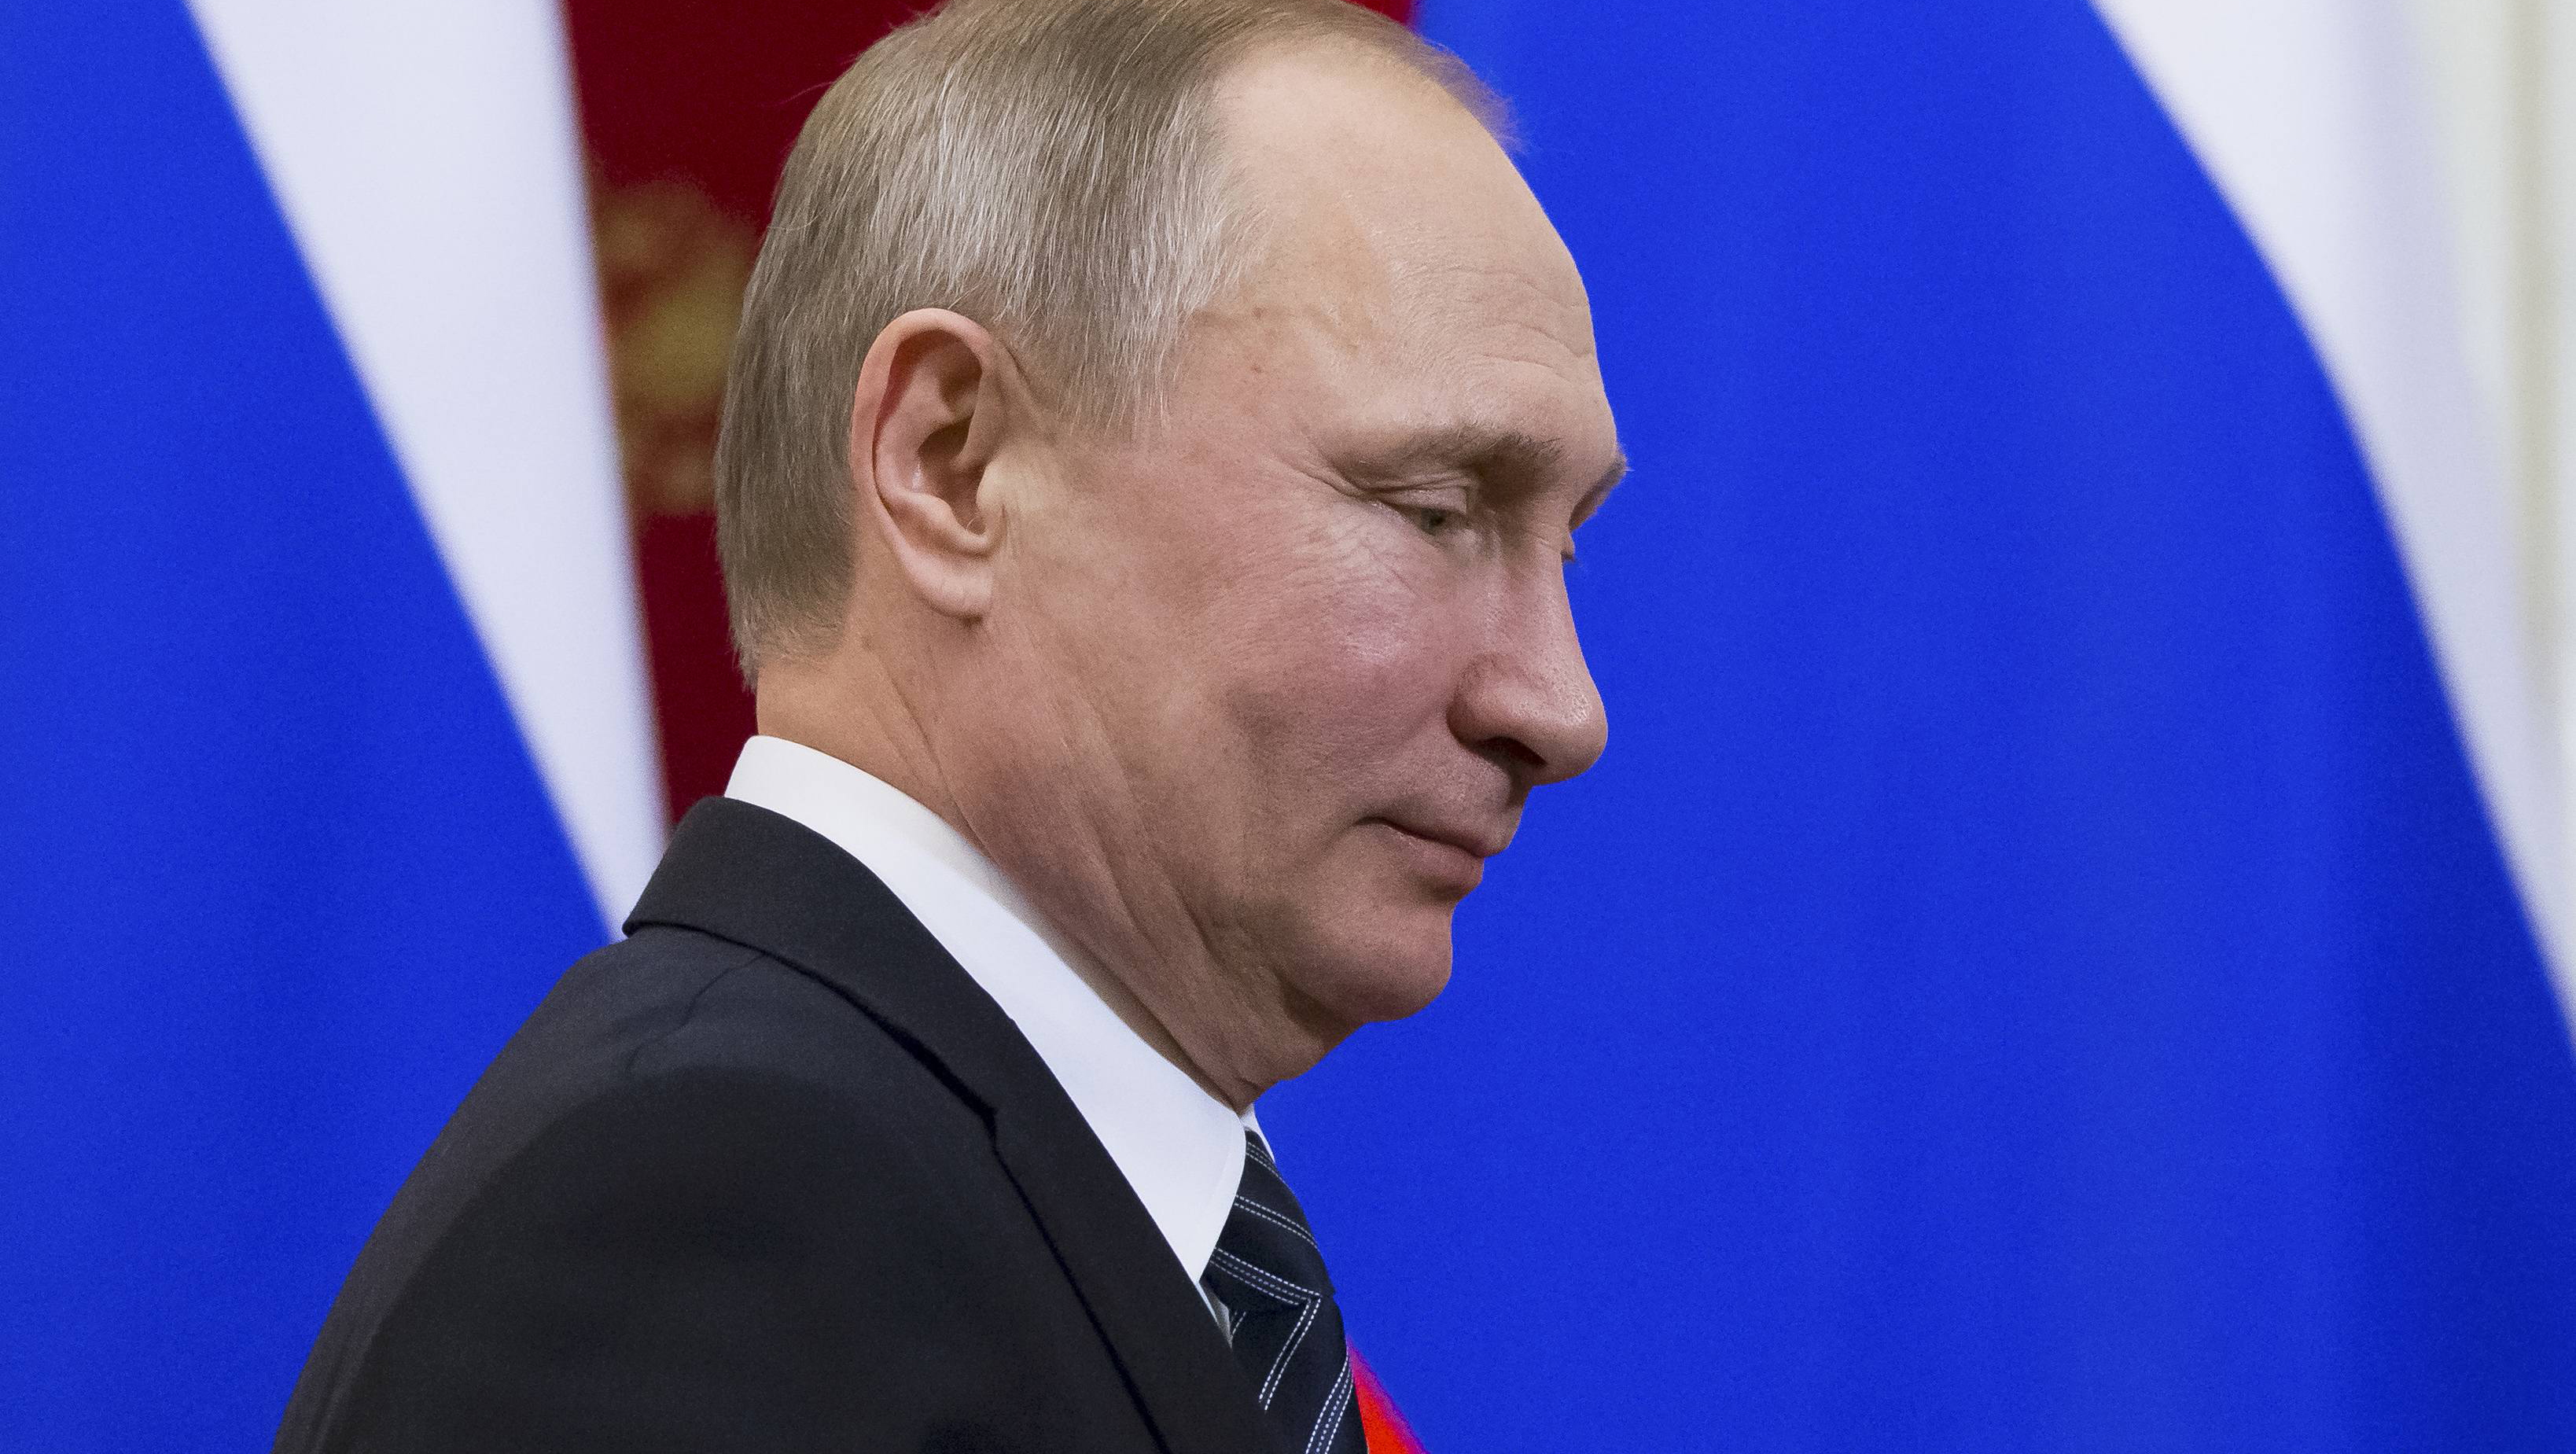 El presidente Vladimir Putin sigue firme en su deseo de una solución política a la guerra en Siria.